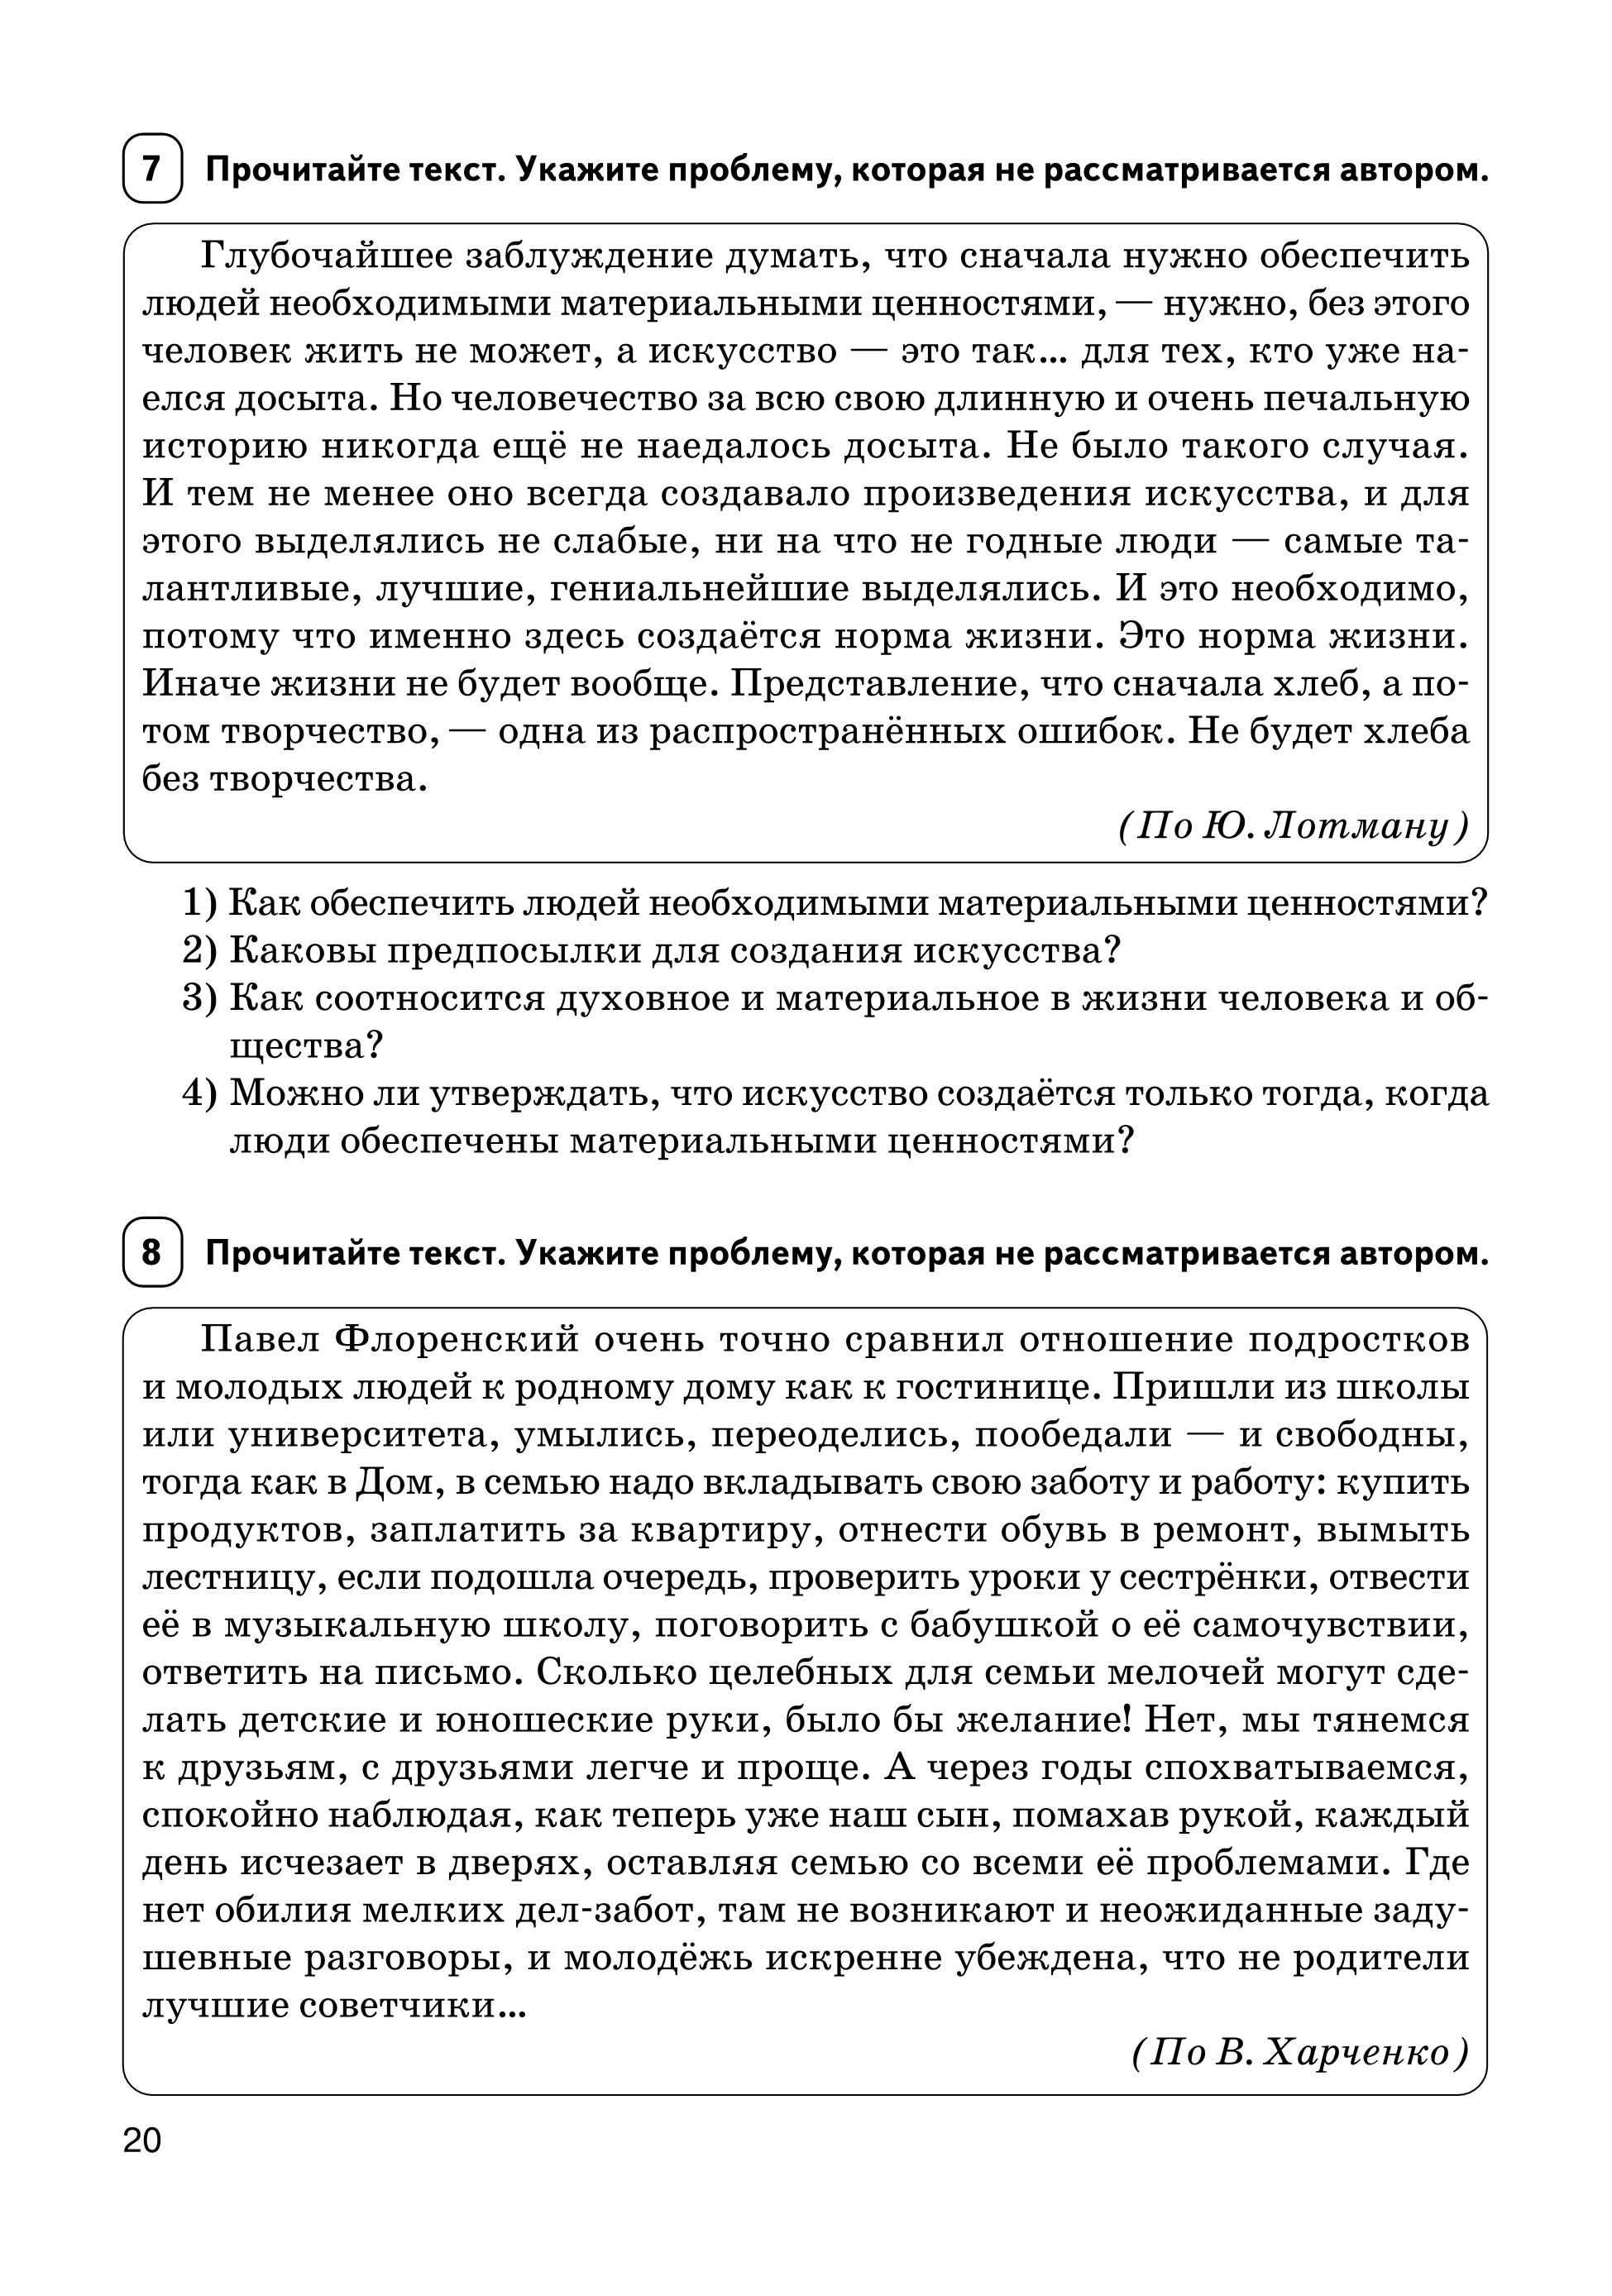 Русский язык. Сочинение на ЕГЭ. Курс интенсивной подготовки. 12-е издание